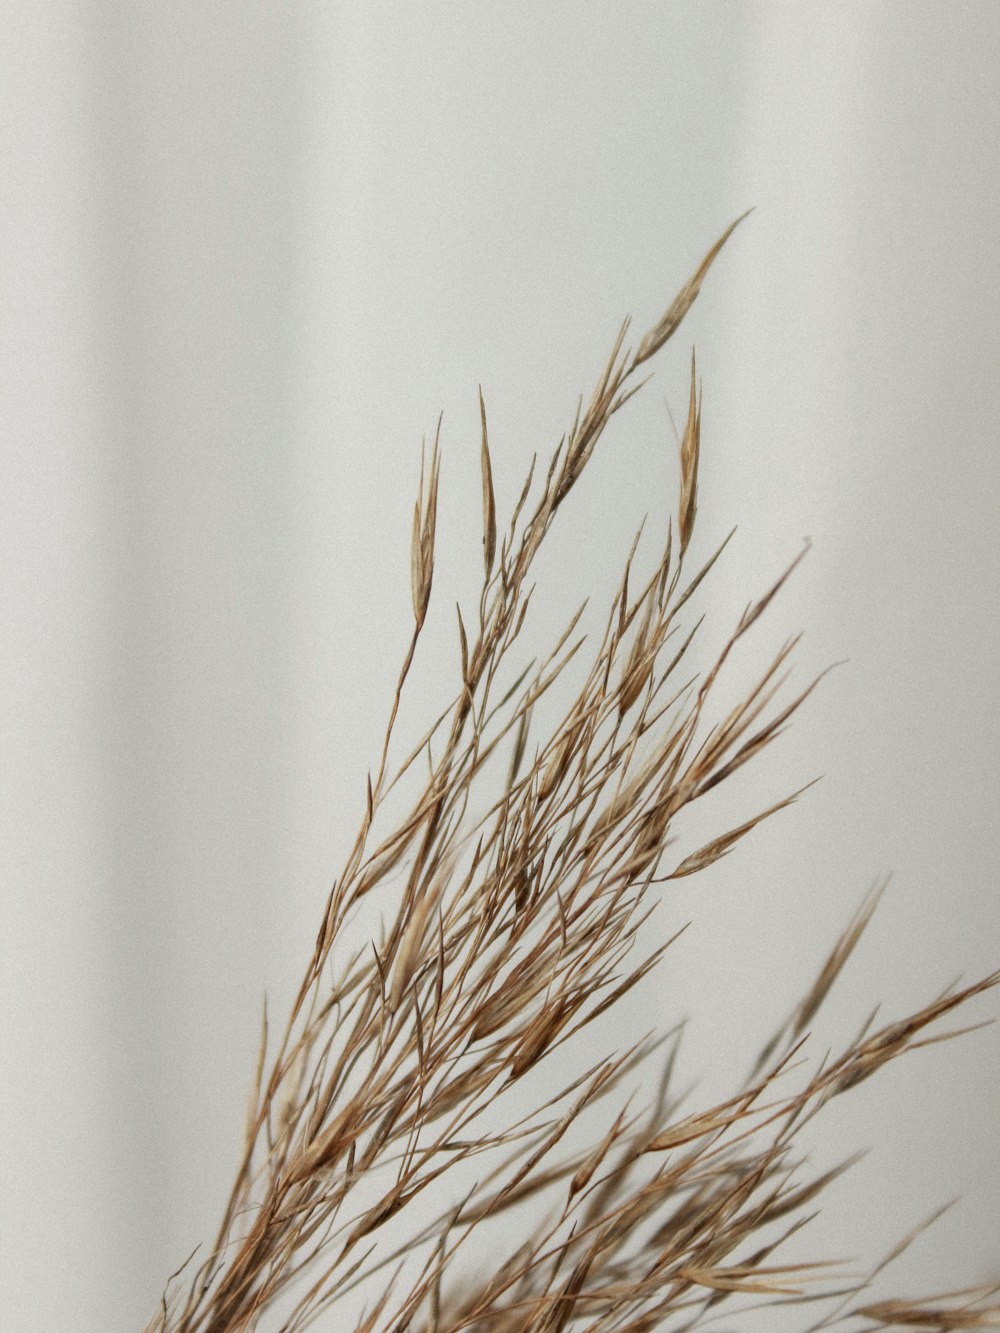 plante de blé brune sur mur blanc